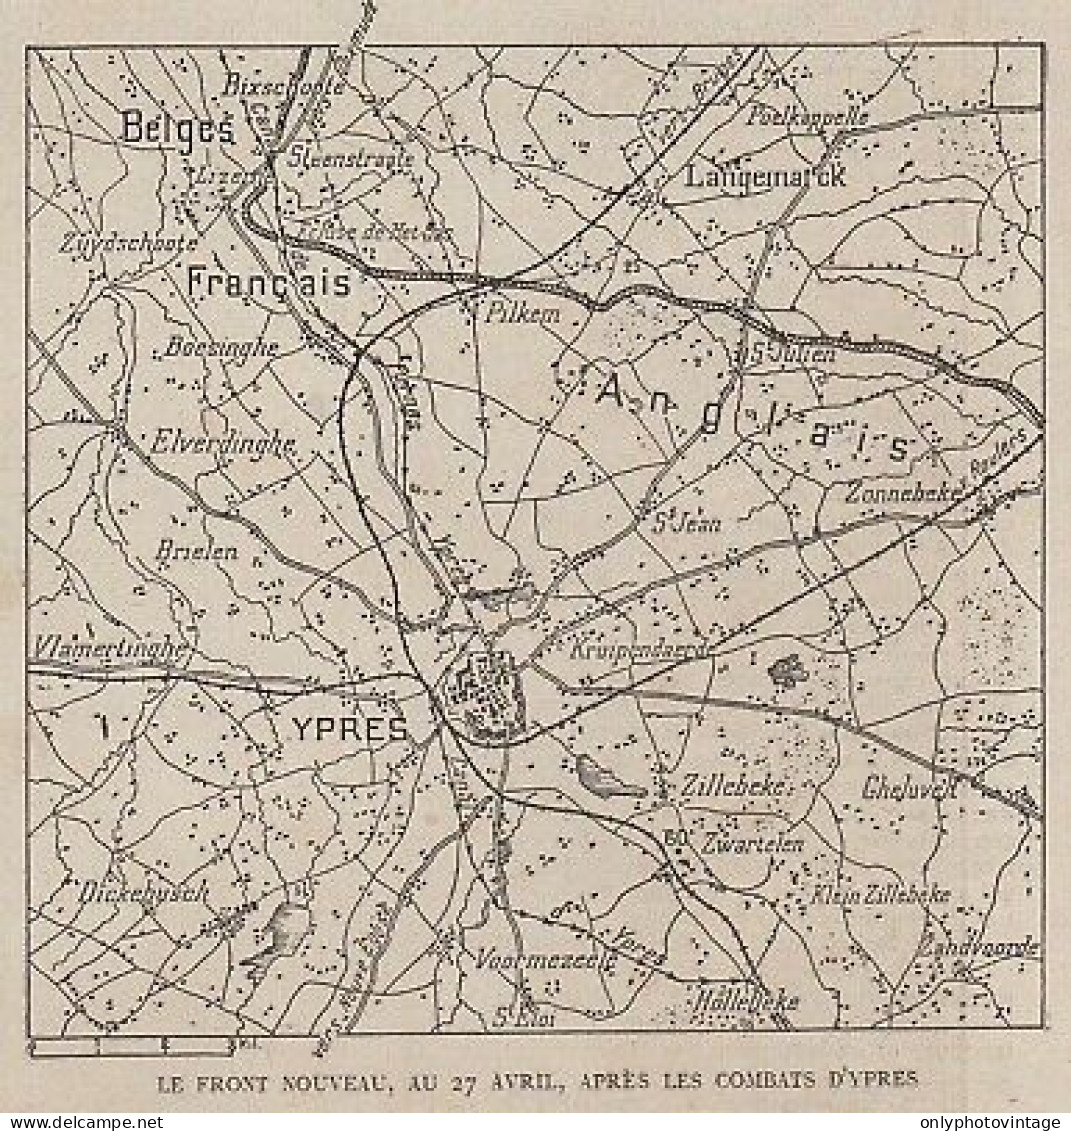 Le Front Nouveau Après Les Combats D'Ypres - Belgique - 1915 Vintage Map - Cartes Géographiques